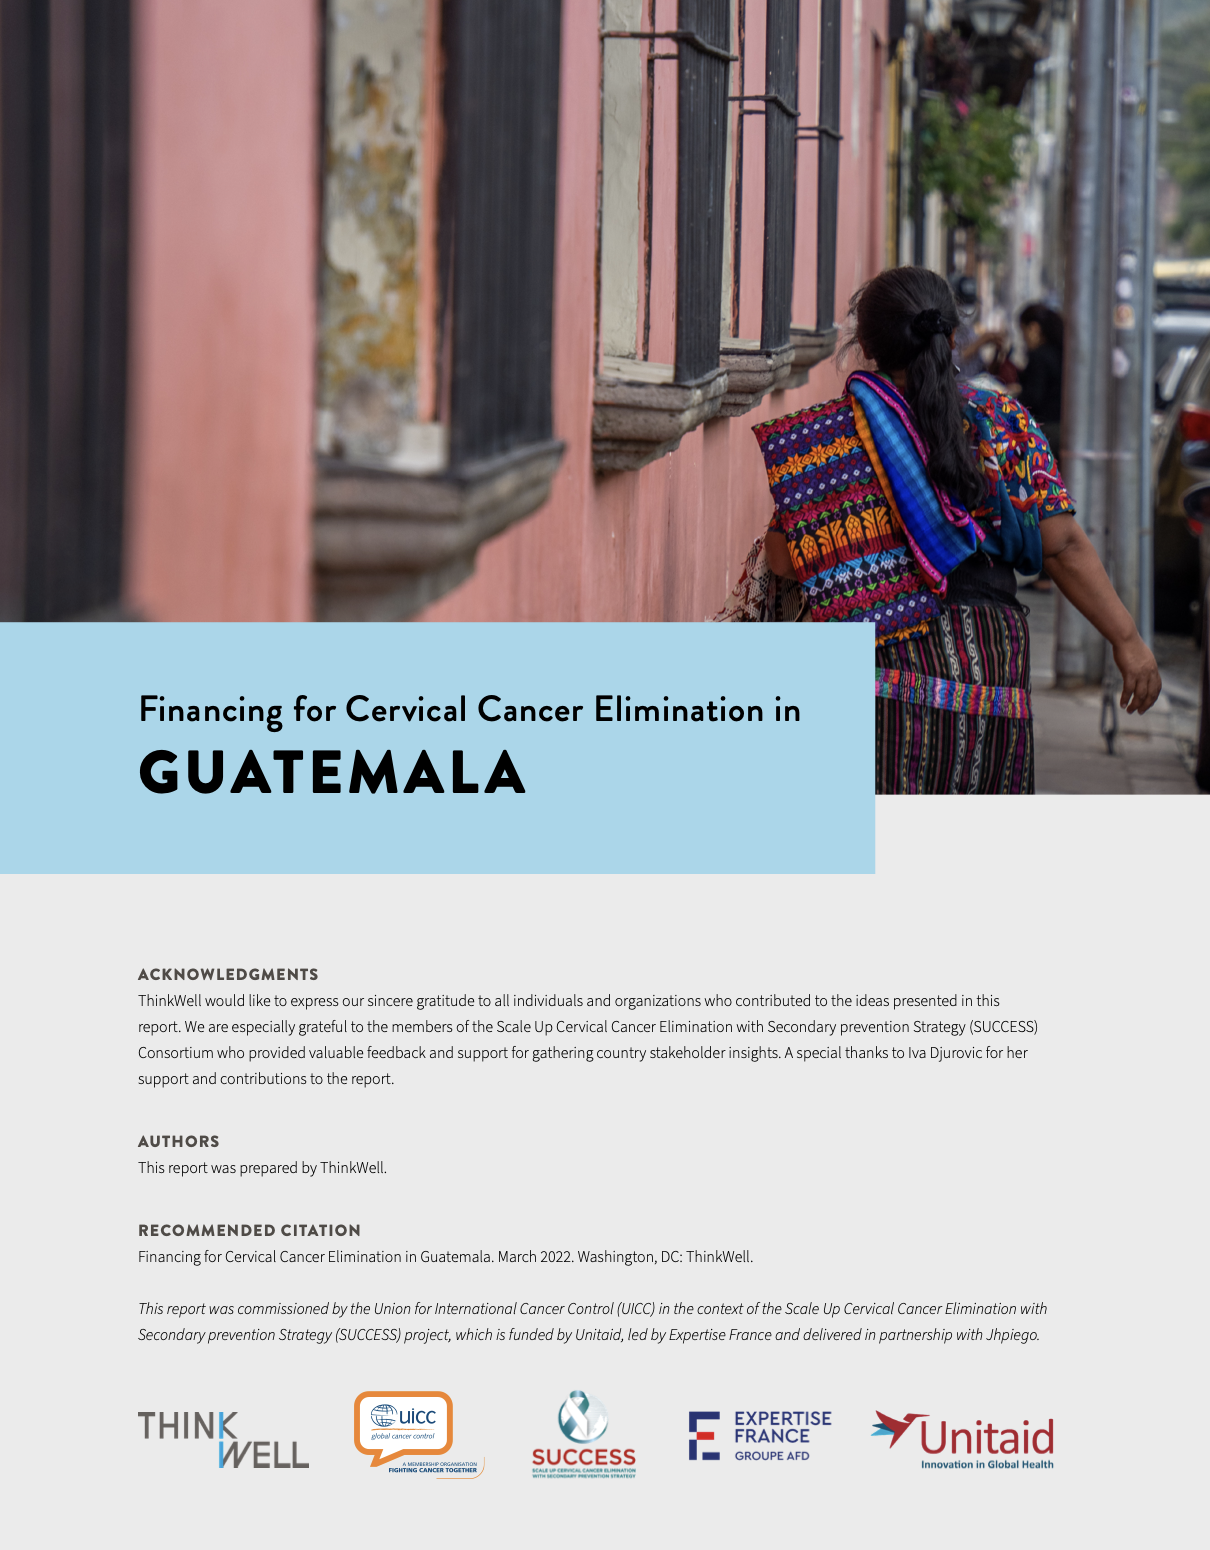 Guatemala: Financing for Cervical Cancer Elimination